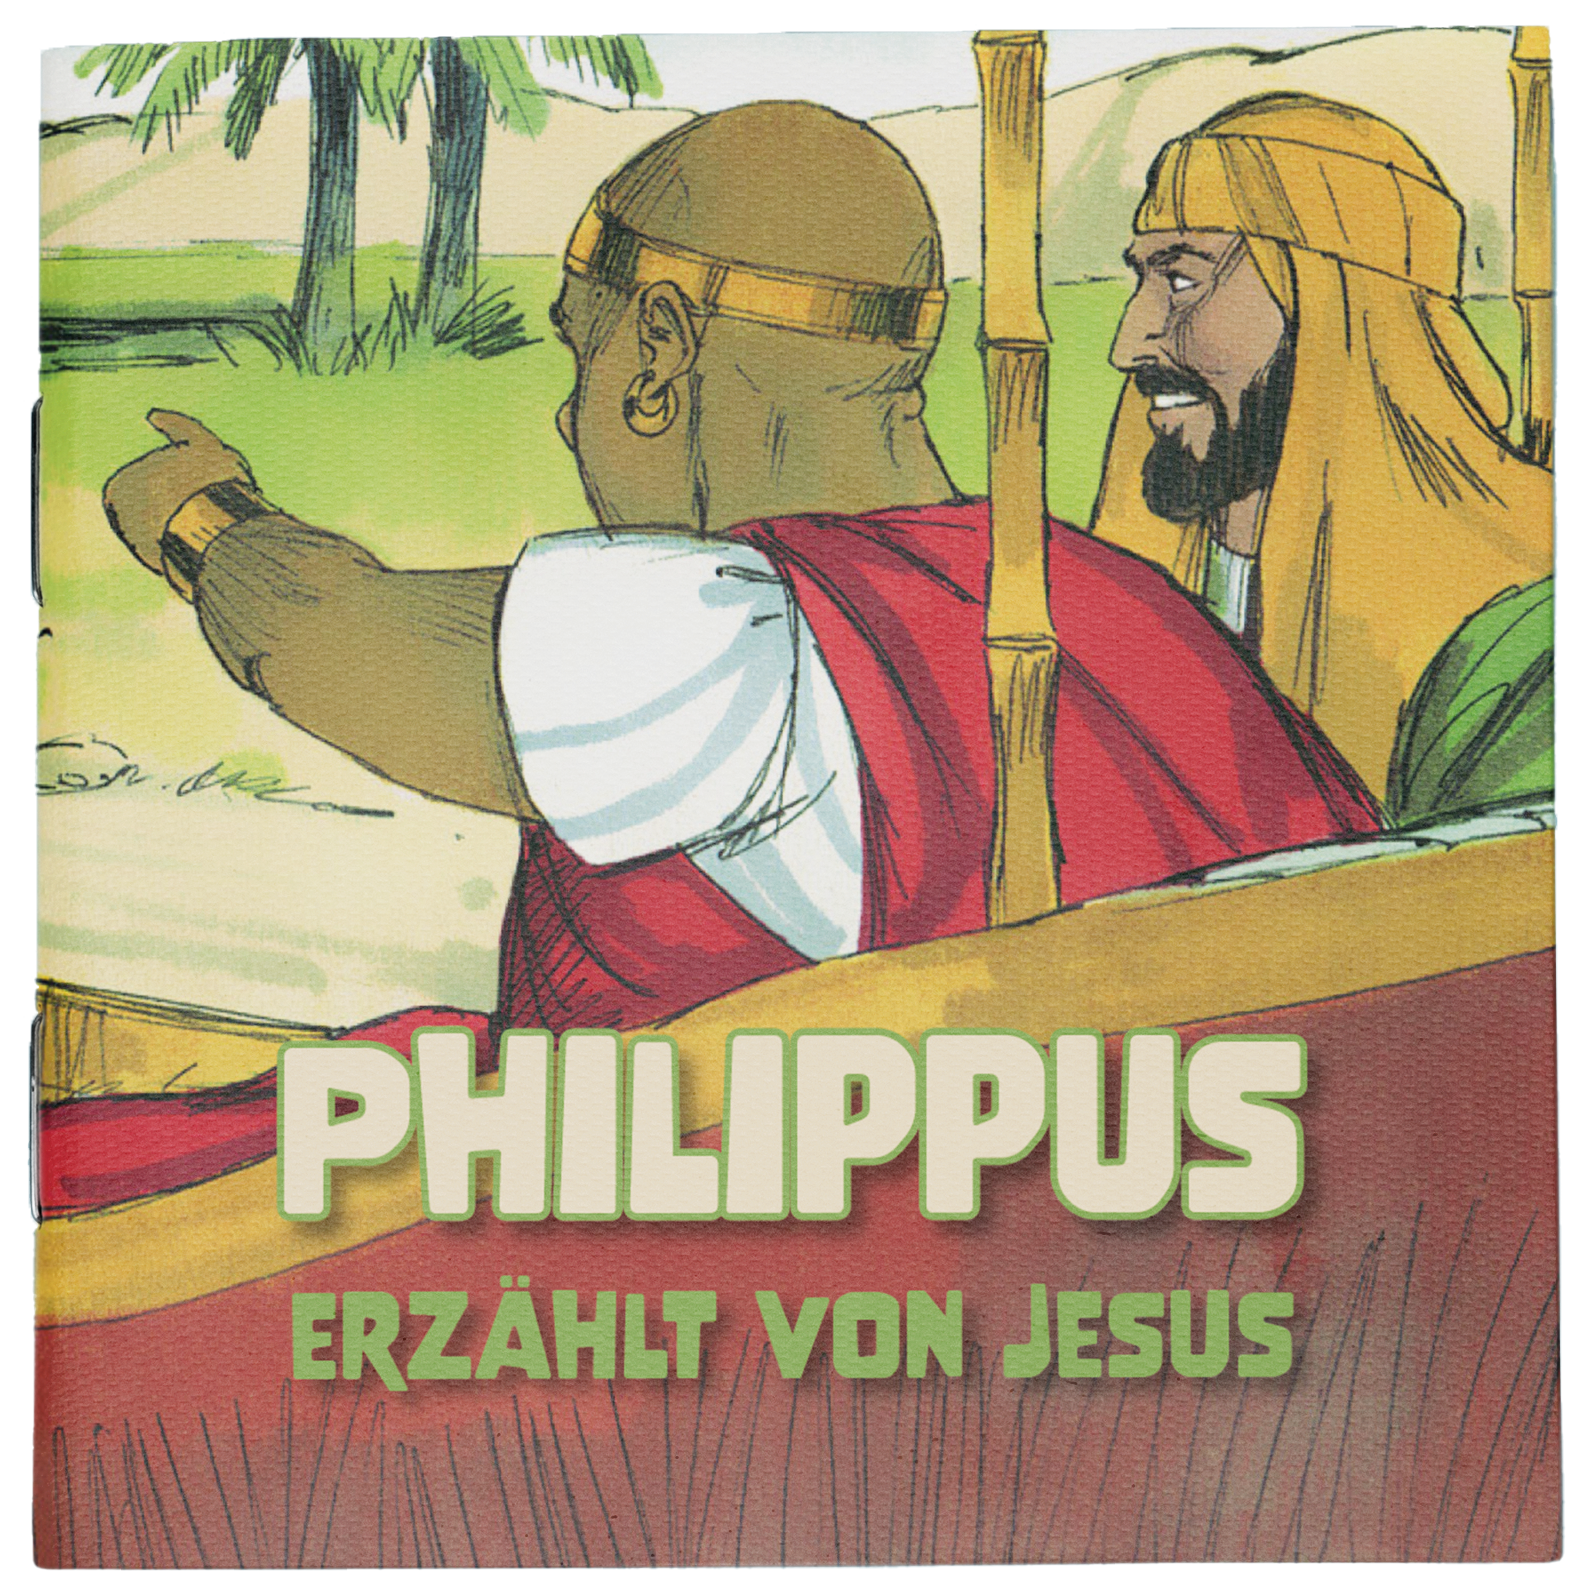 Philippus erzählt von Jesus